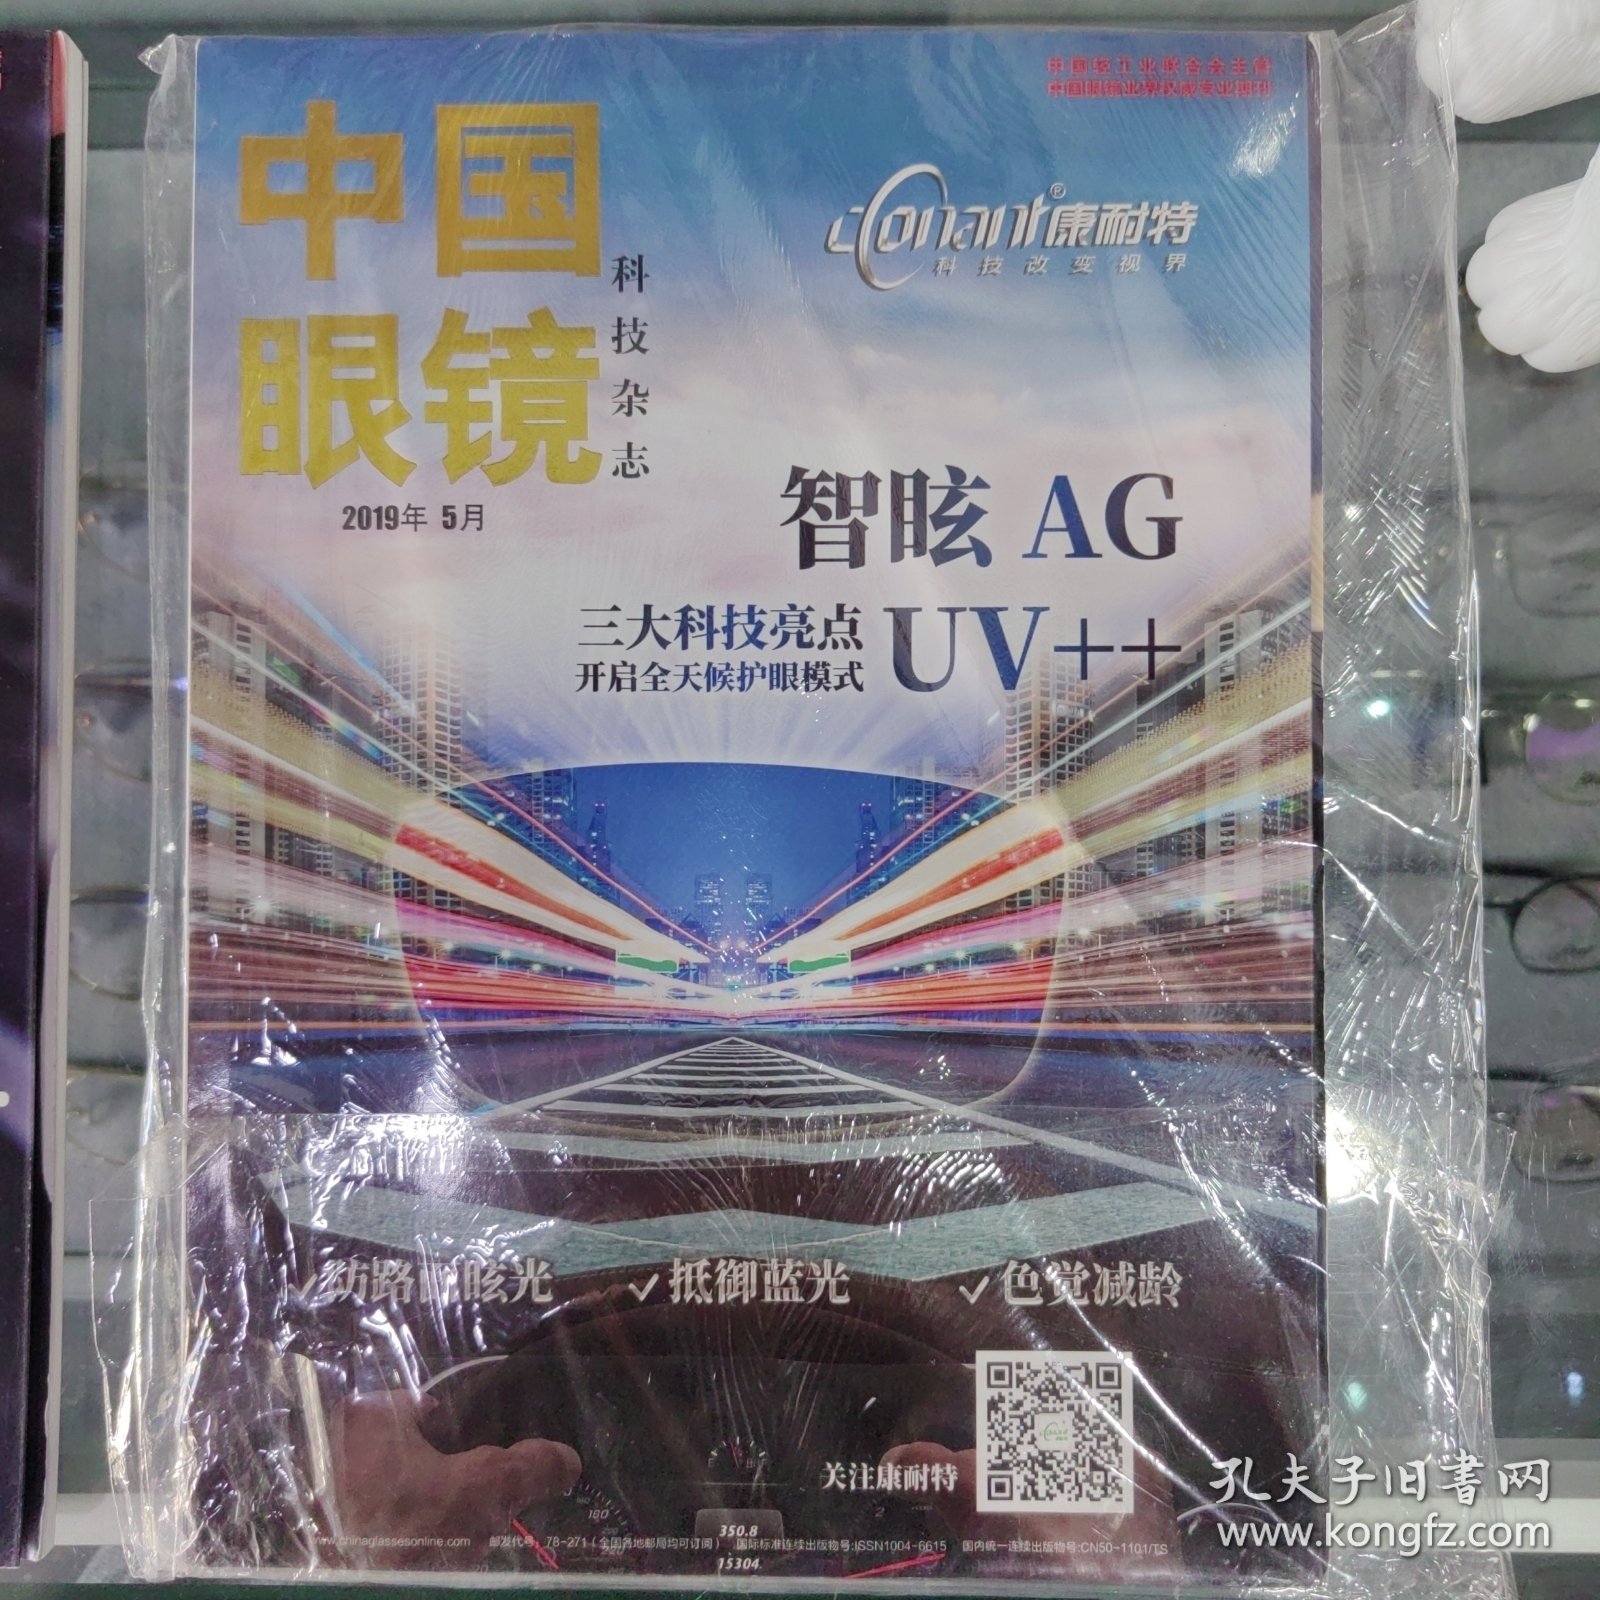 中国眼镜科技杂志 2019 5月 8月 2011 10元一本